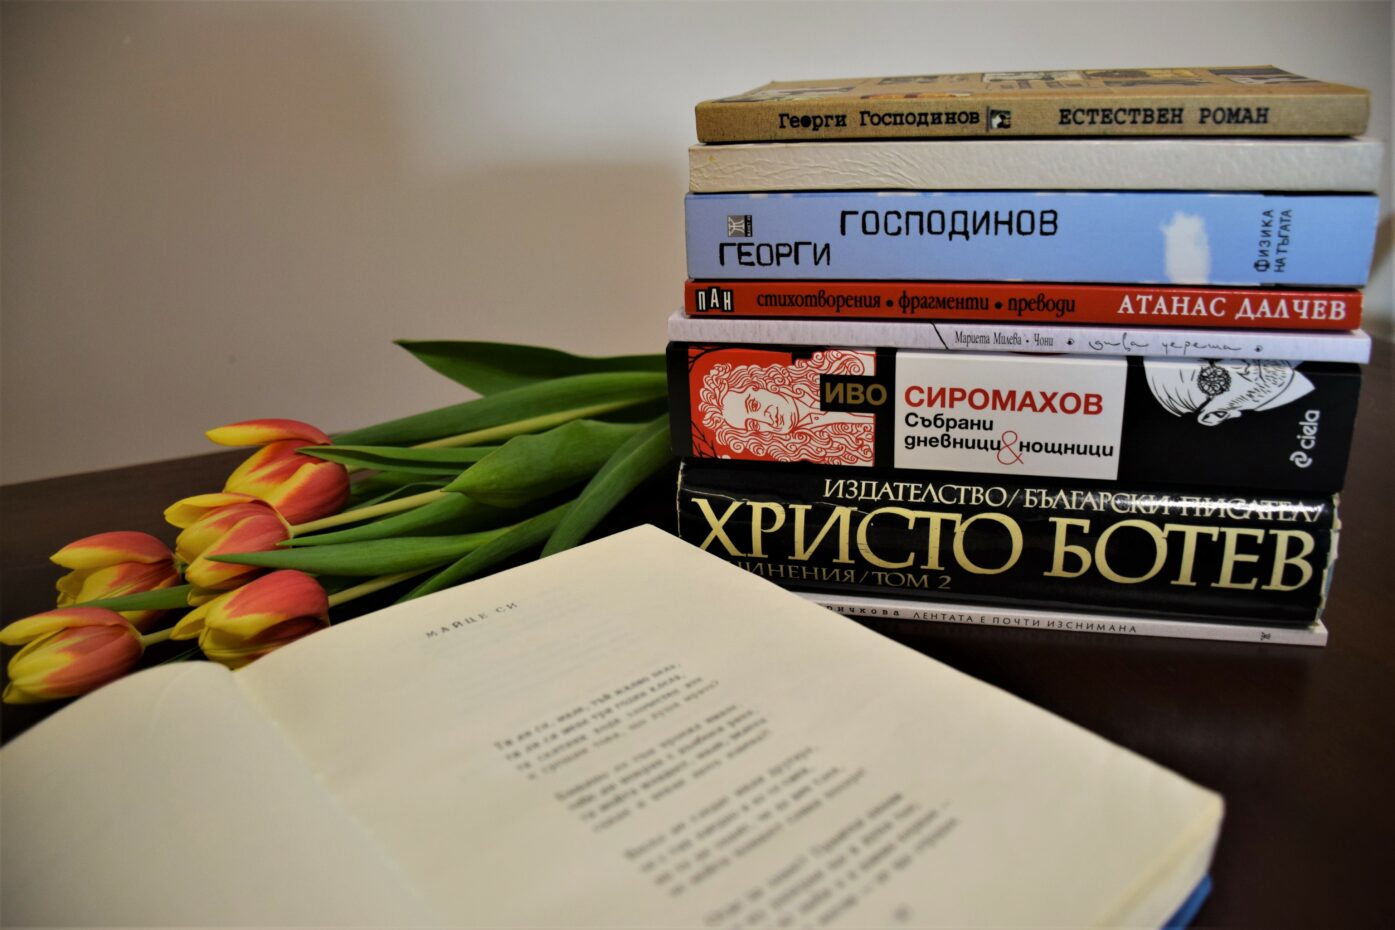 Zhanet-St.-Bulgarian-Books-1395x930.jpg (1395×930)